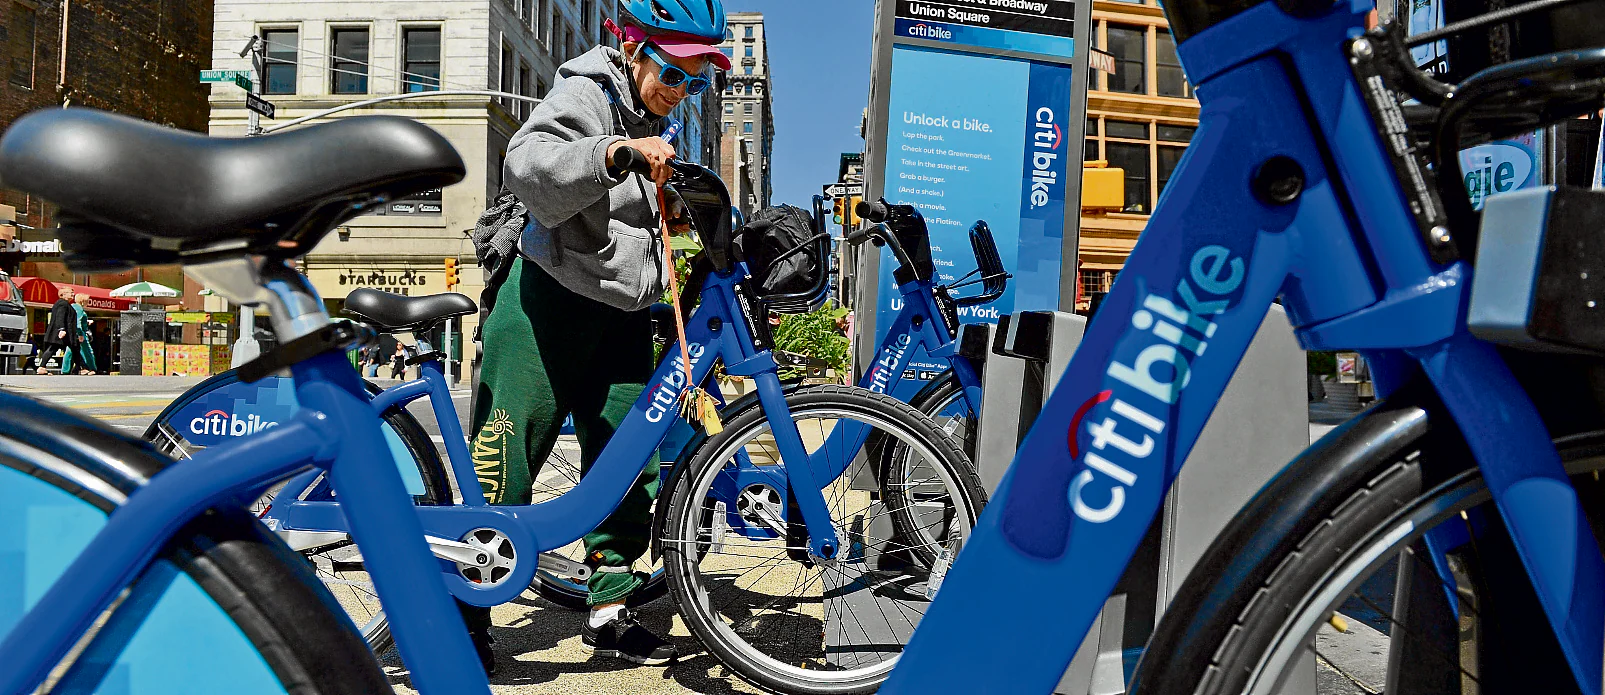 El Ayuntamiento eligió el mismo modelo de bicicleta de alquiler que funciona en Nueva York y Londres